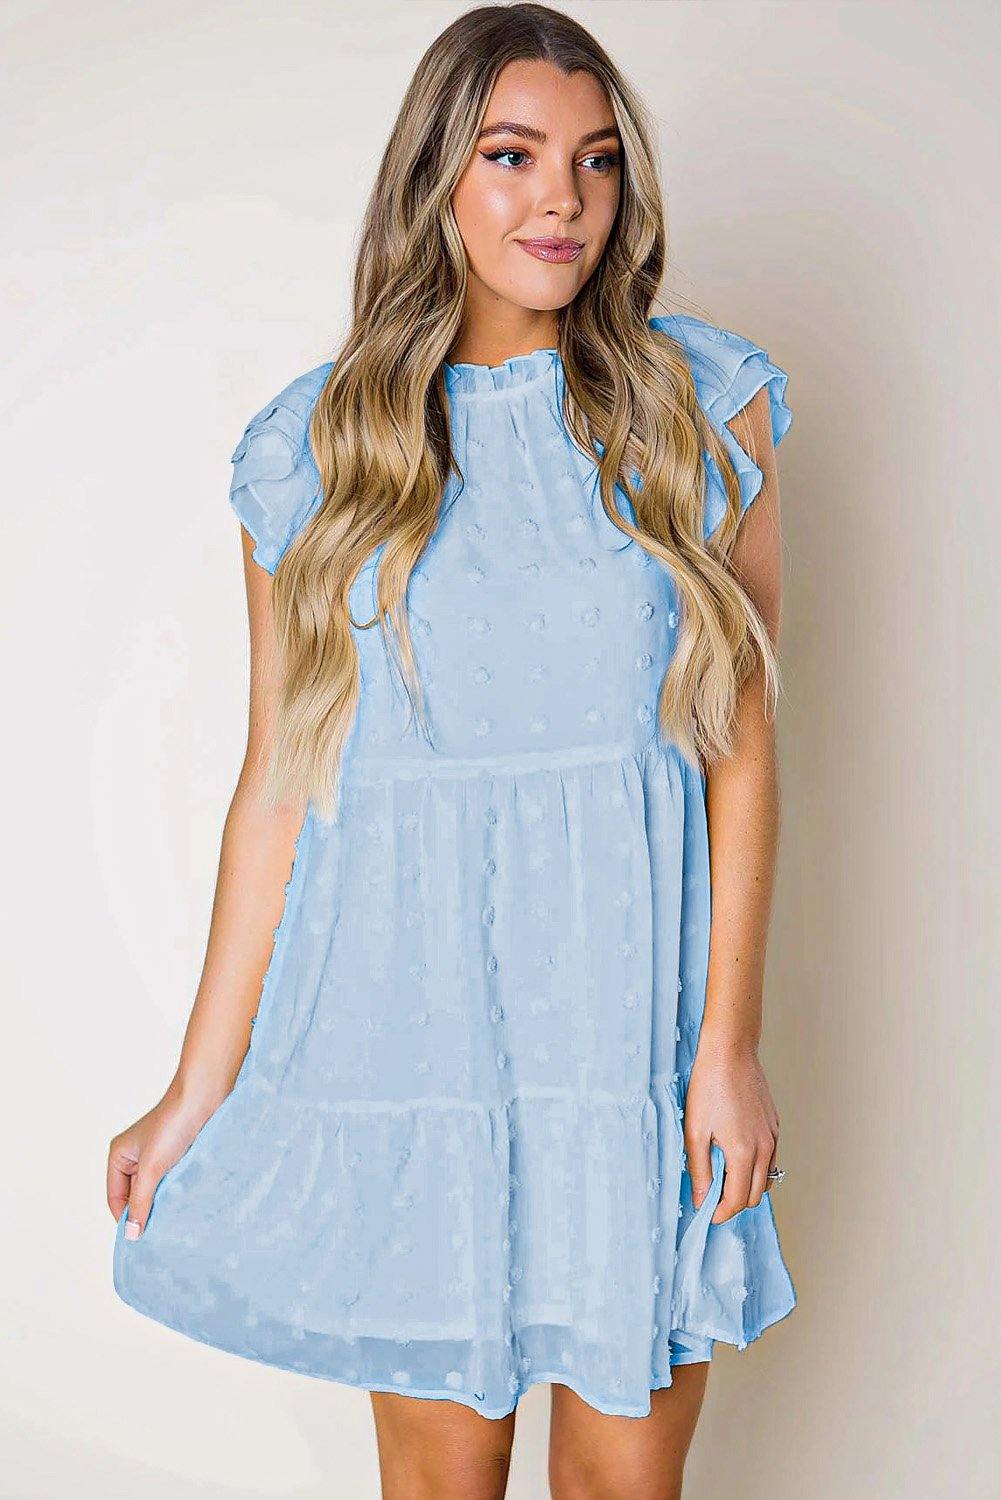 Swiss Dot Layered Mini Dress - L & M Kee, LLC